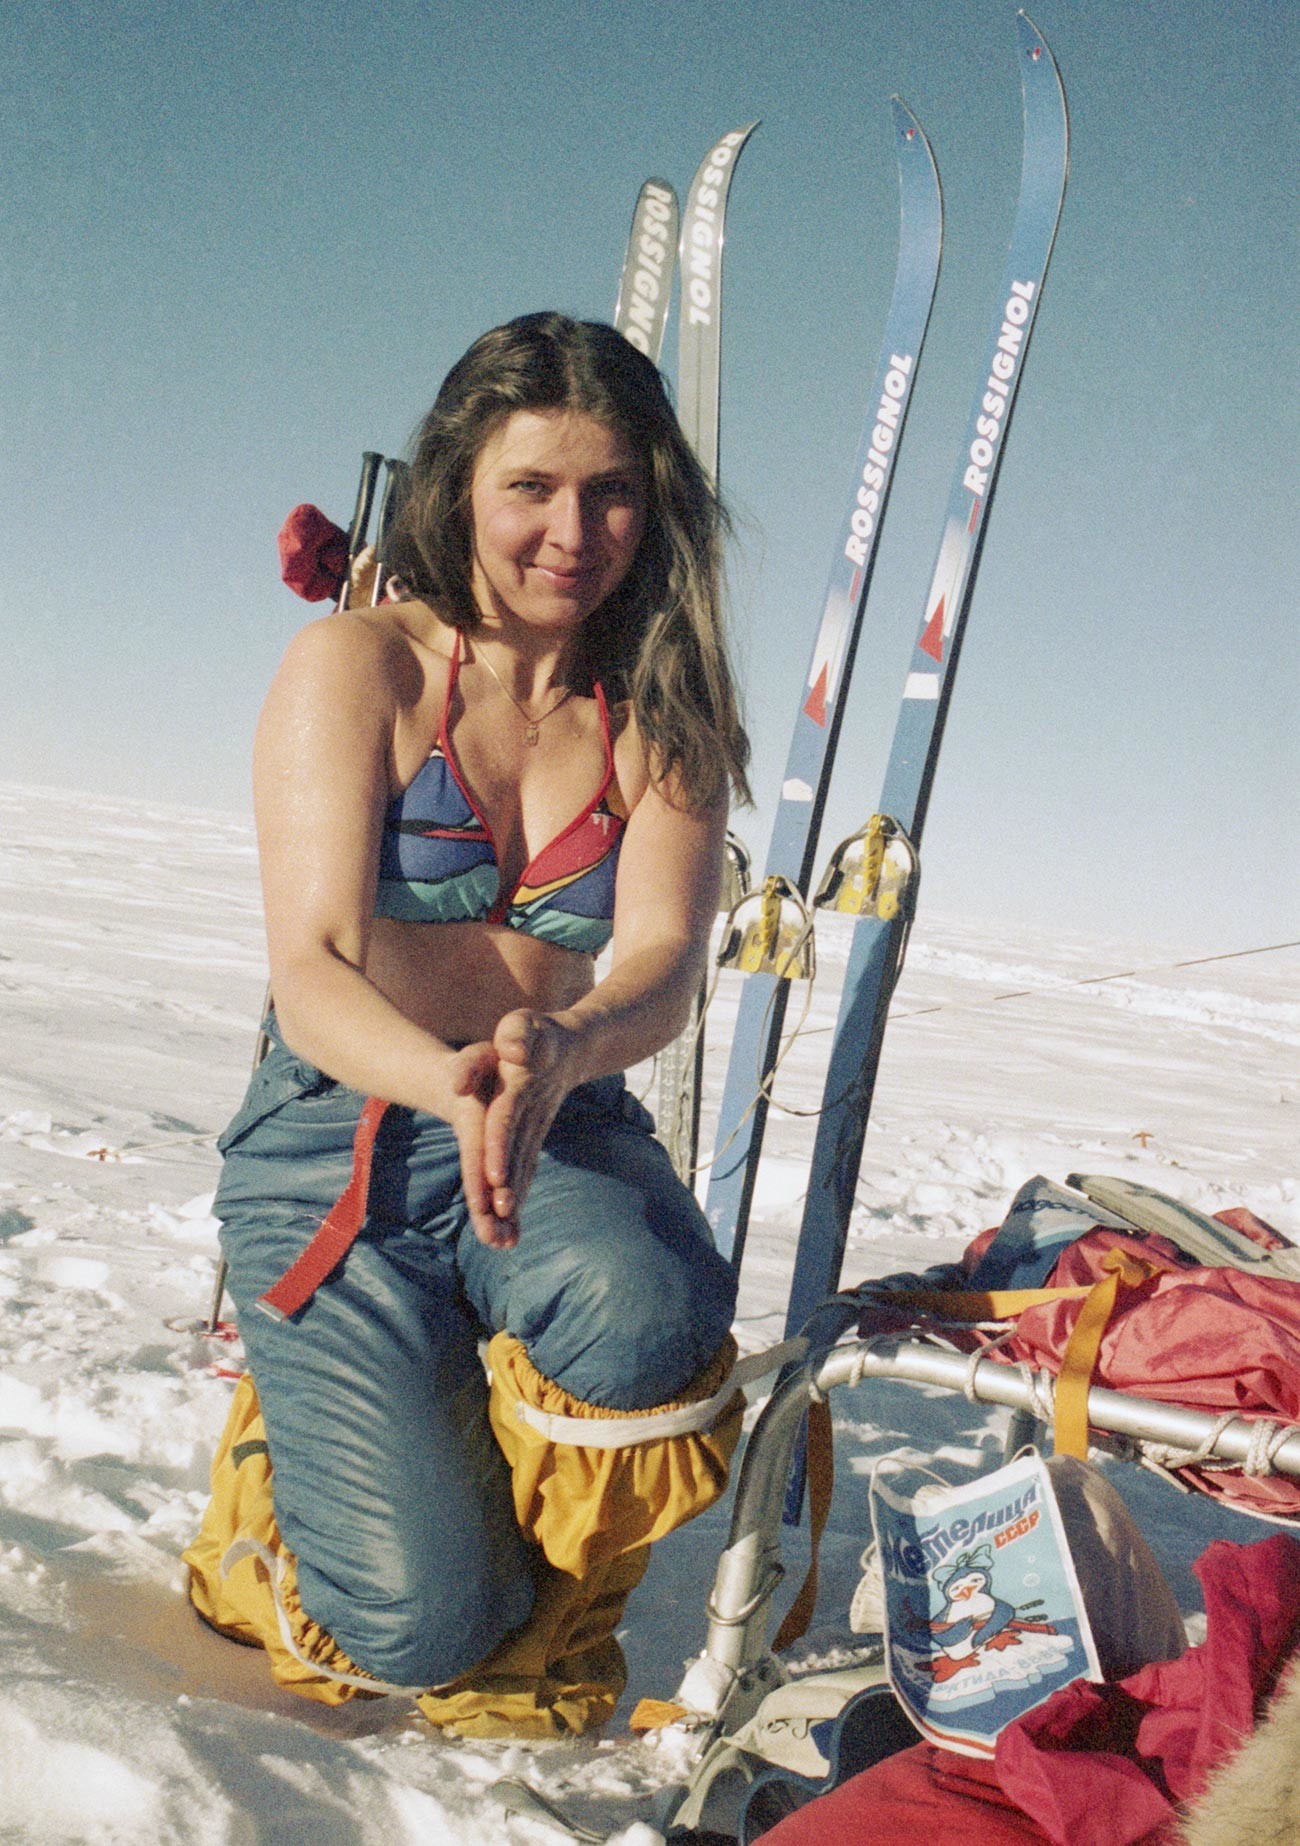 A Metelitsa member in the Arctic.